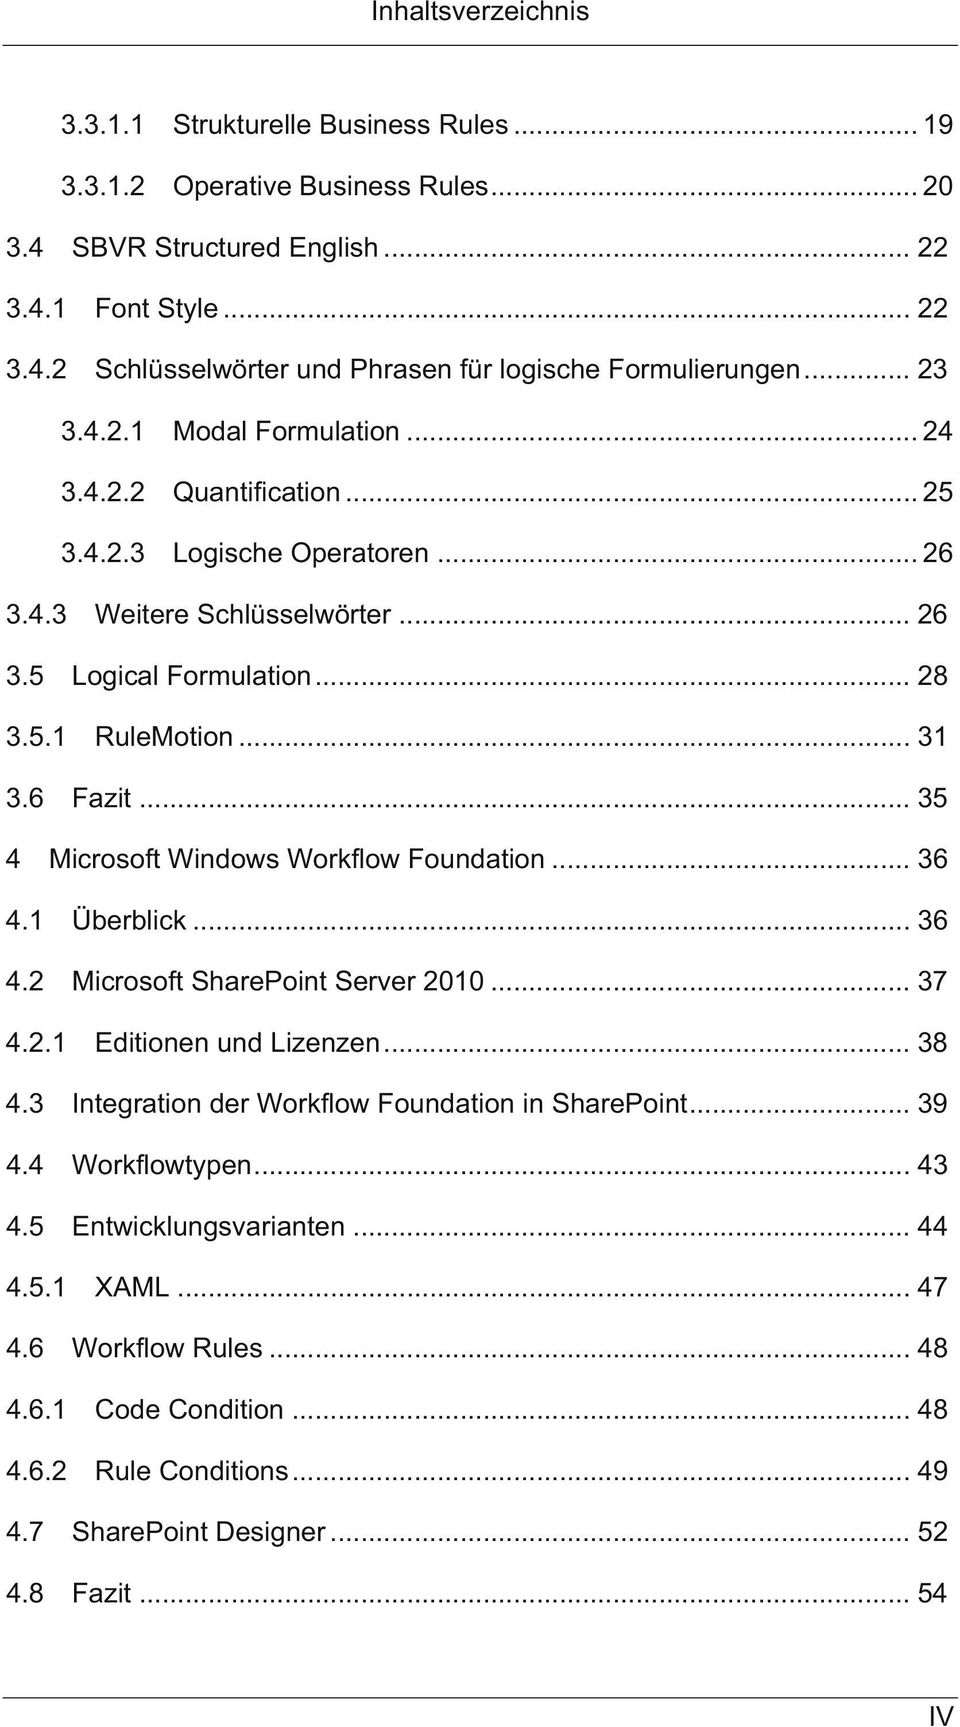 .. 28 3.5.1 RuleMotion... 31 3.6 Fazit... 35 4 Microsoft Windows Workflow Foundation... 36 4.1 Überblick... 36 4.2 Microsoft SharePoint Server 2010... 37 4.2.1 Editionen und Lizenzen... 38 4.